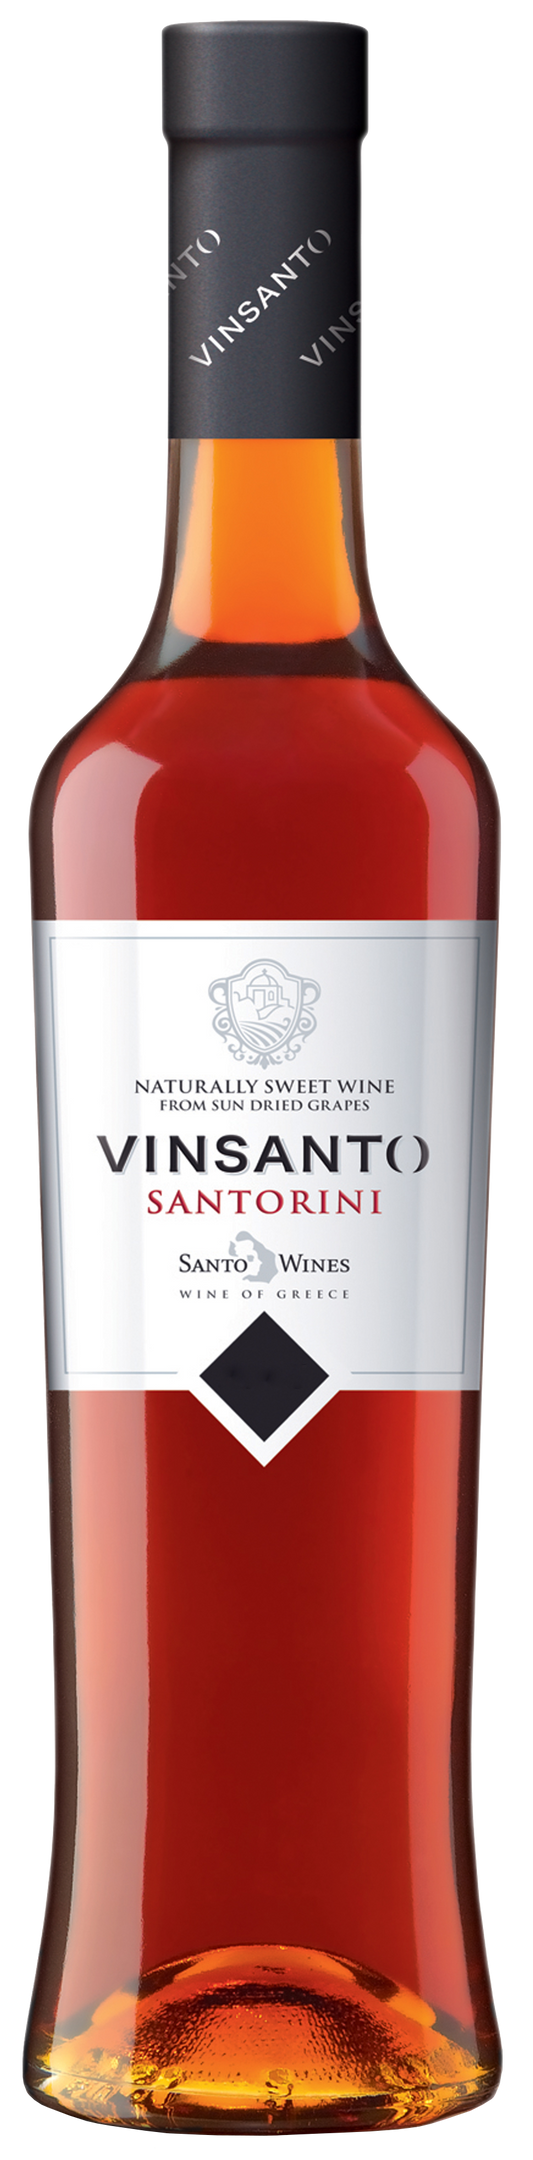 サント・ワインズ  サントリーニ・ヴィンサント 2013 SANTO WINES  SANTORINI VINSANTO 6 YEARS